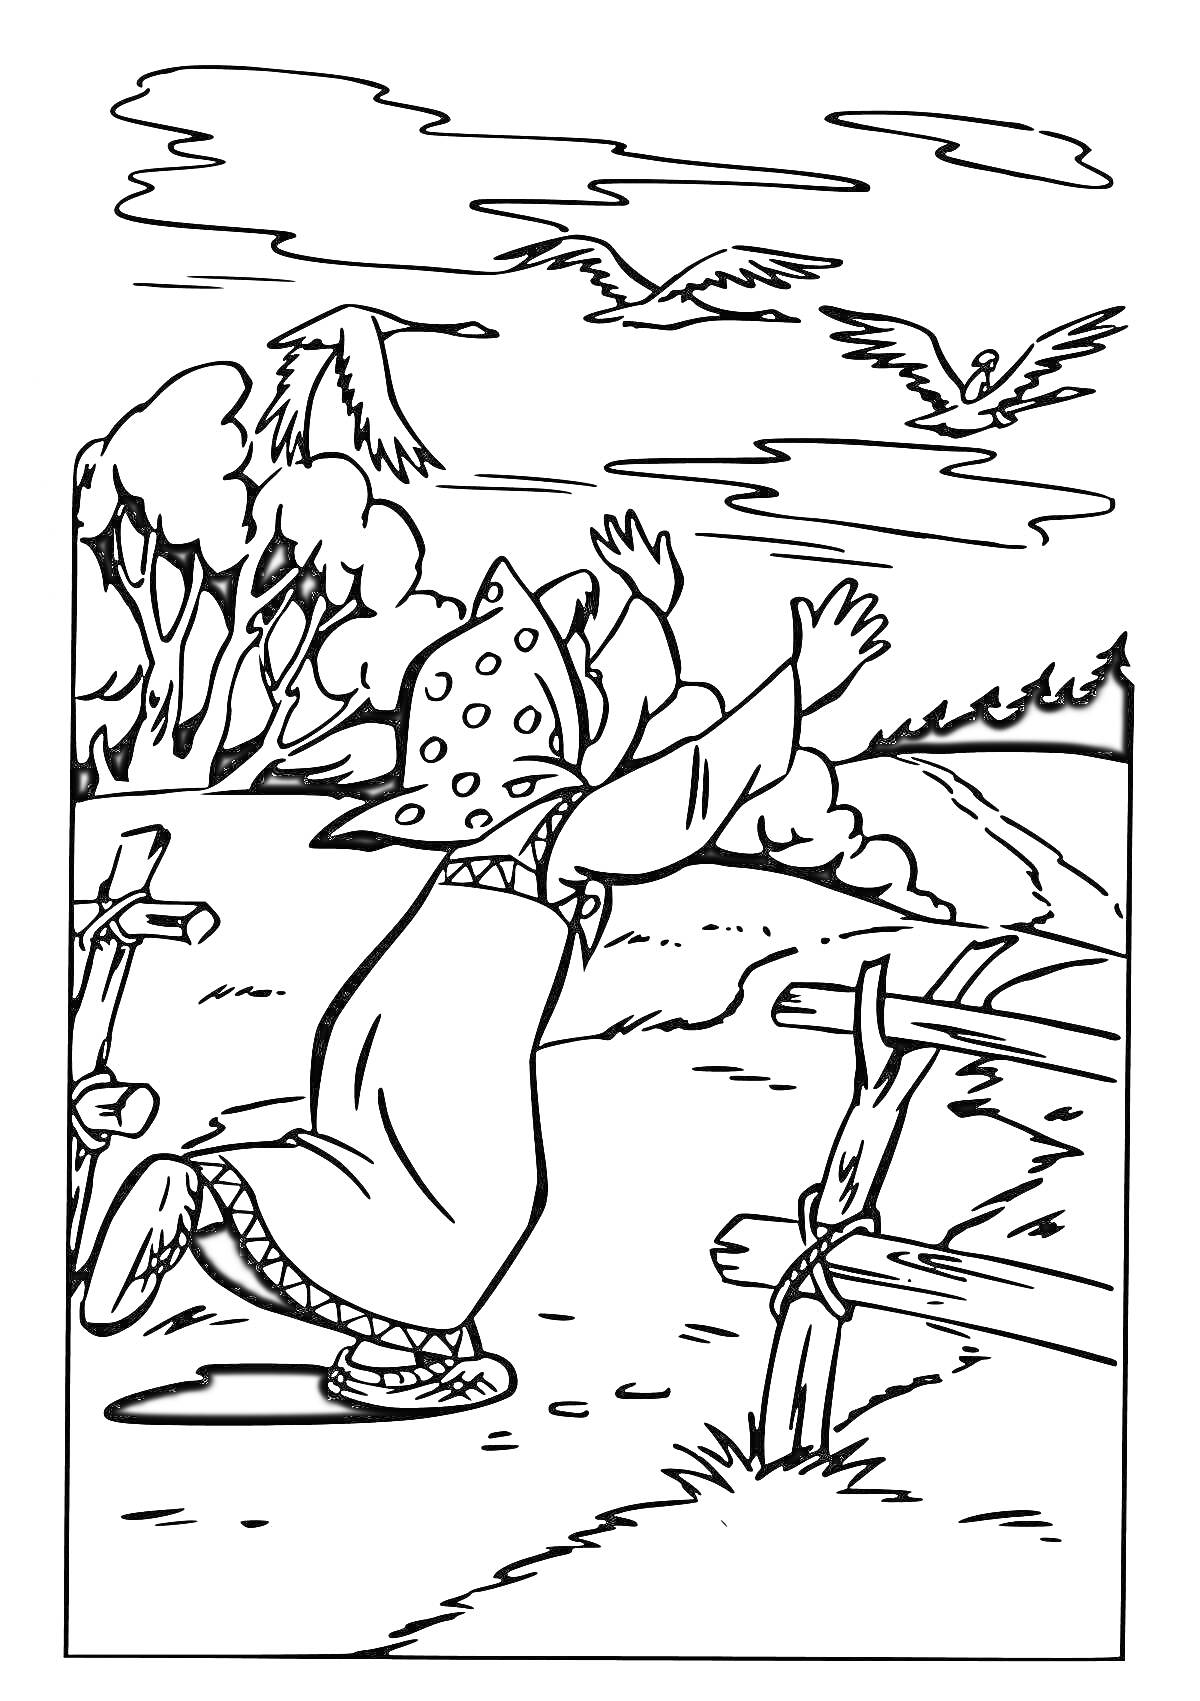 Раскраска Бабушка в платке машет руками на фоне деревьев, уходящей дороги и летящих гусей-лебедей